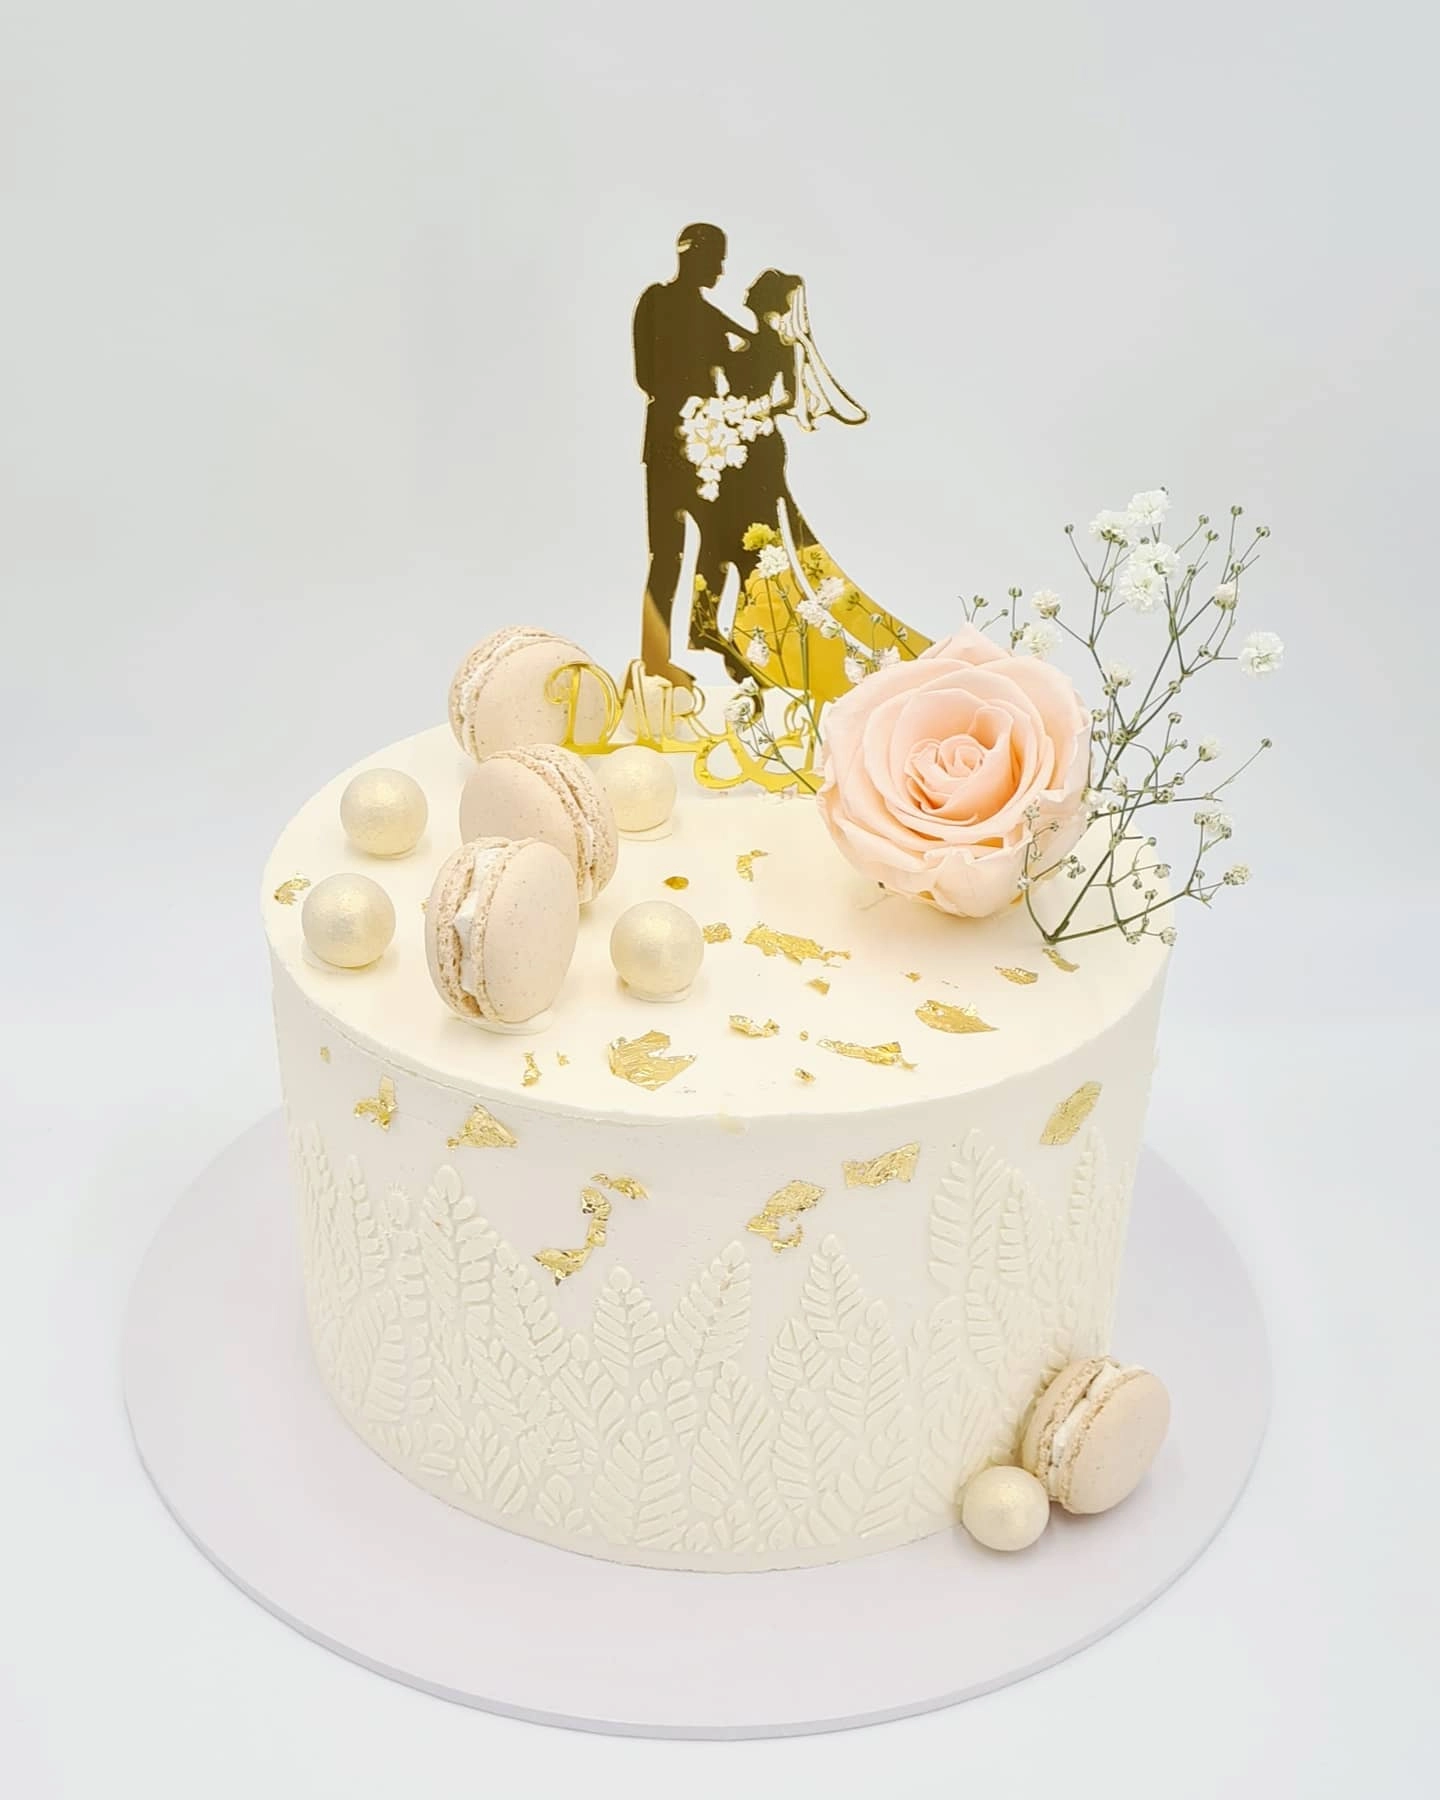 Comment bien choisir son gâteau de mariage ?